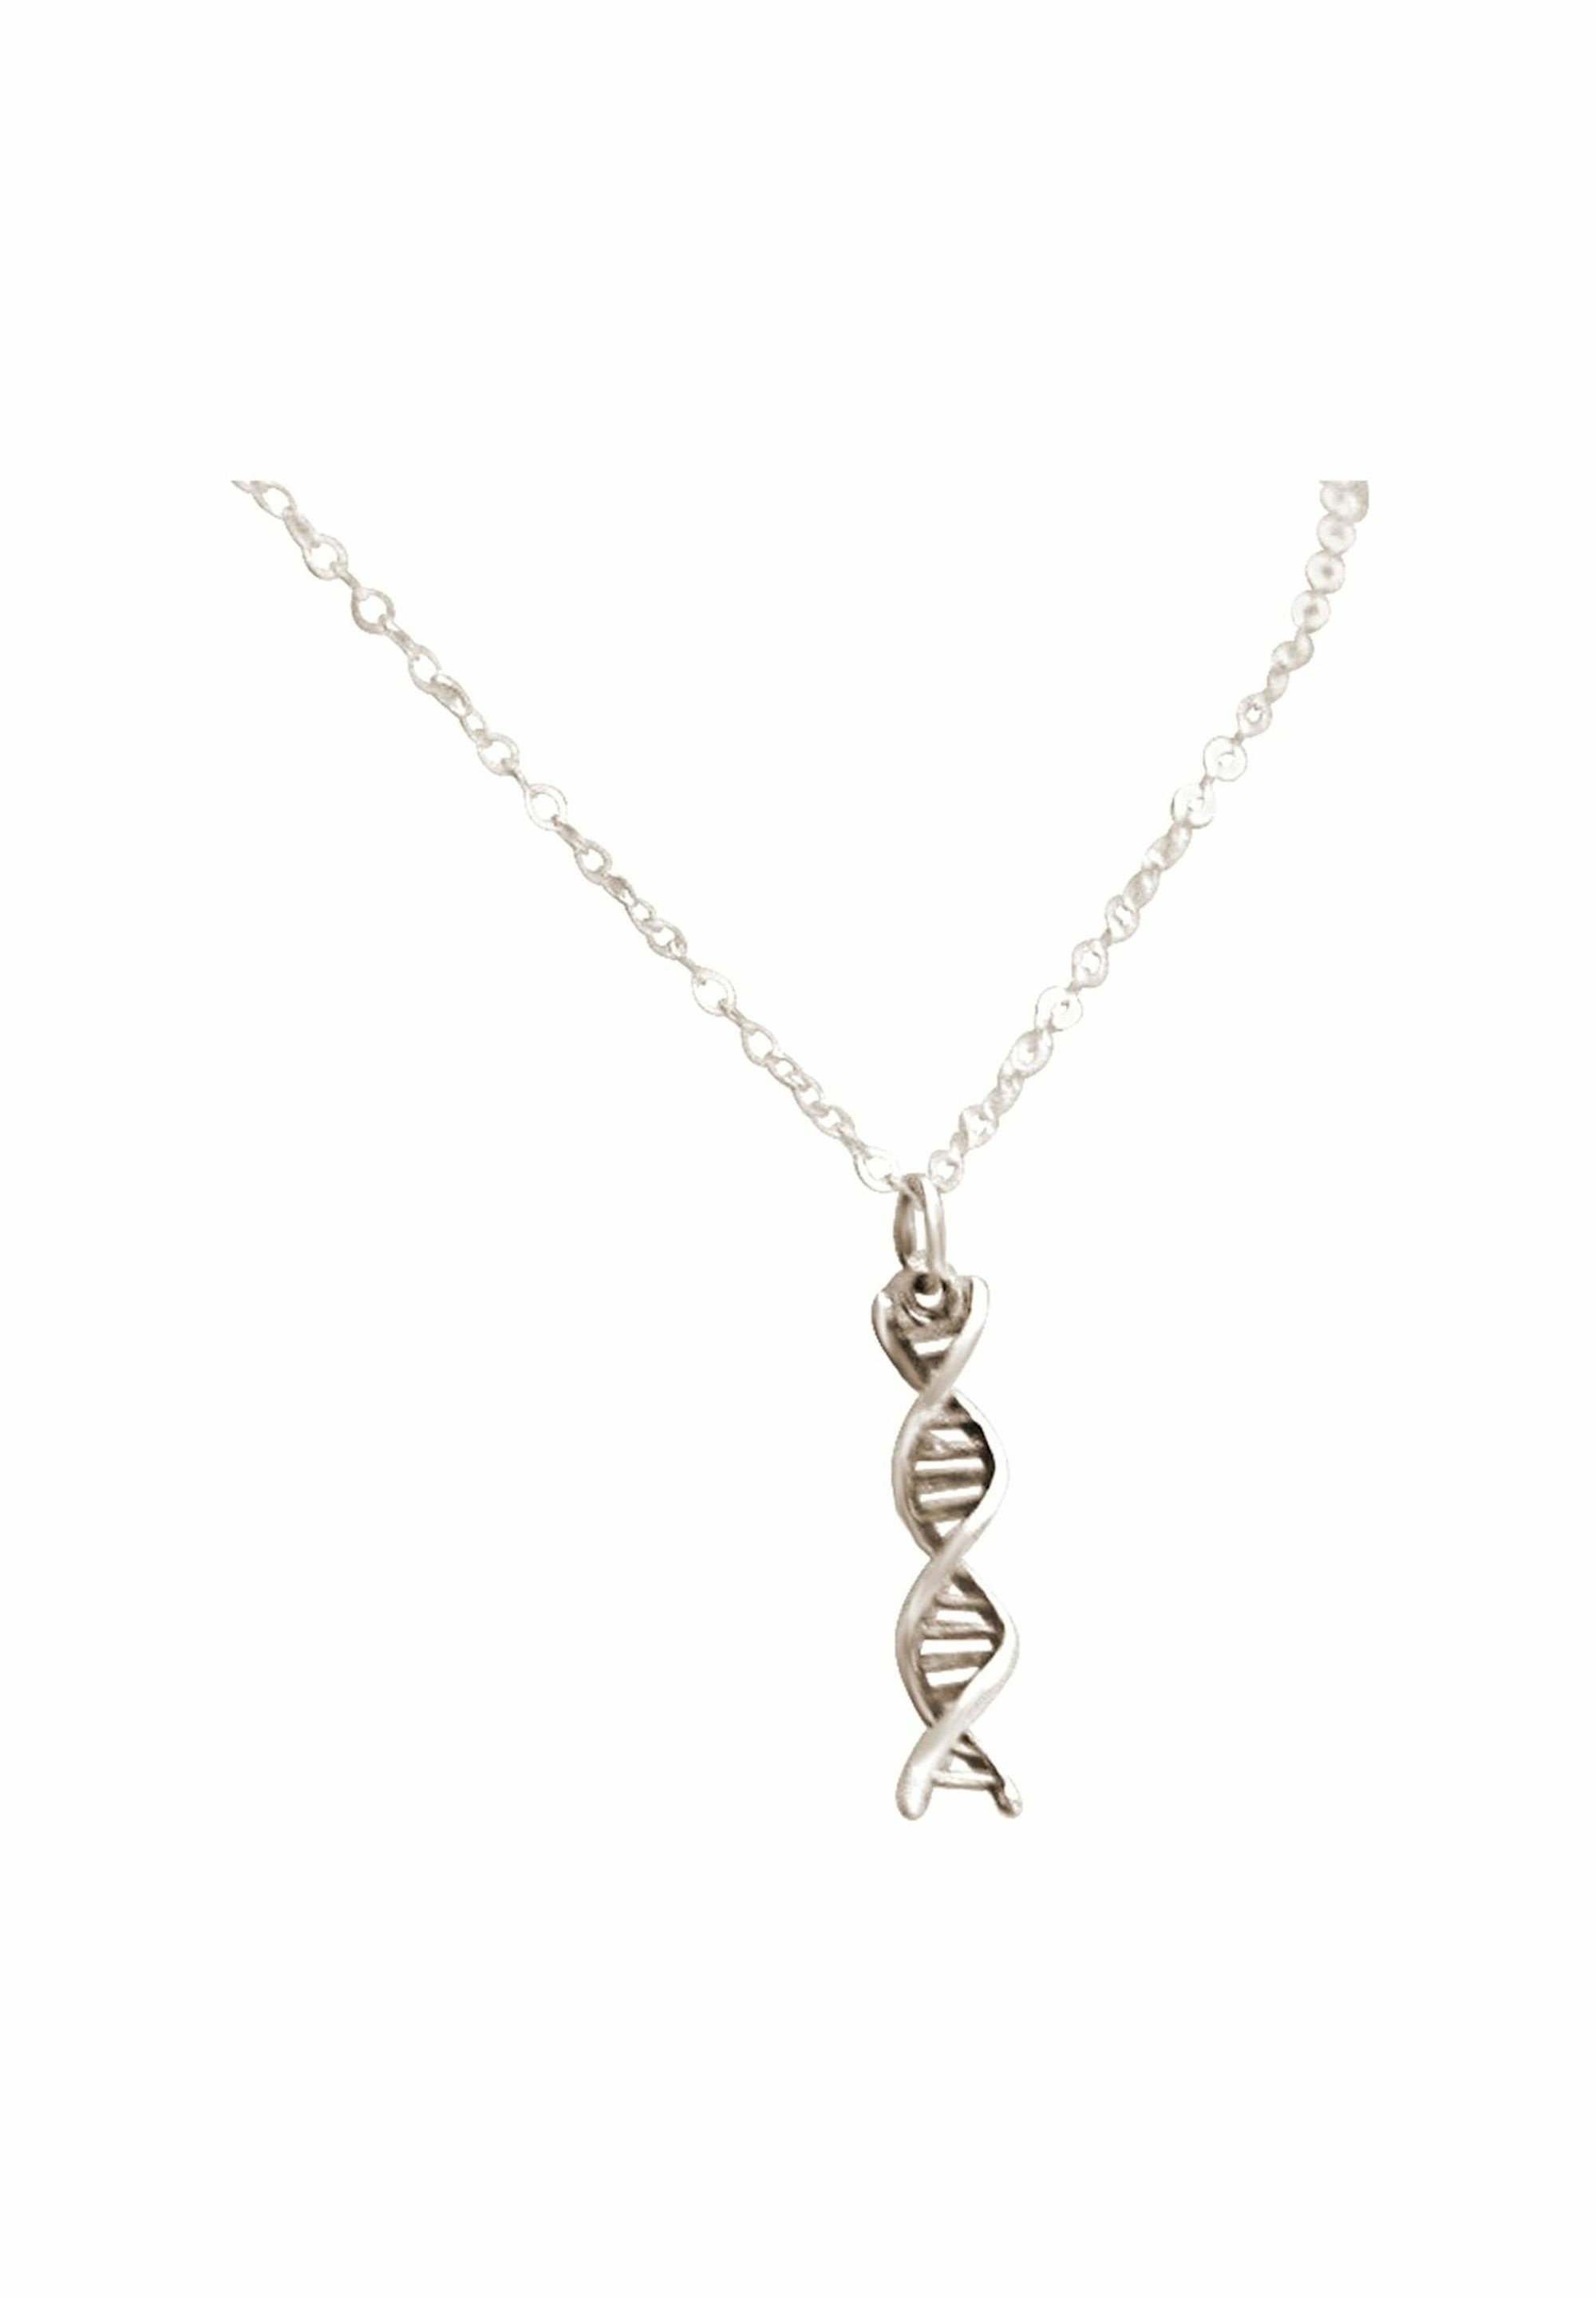 Kette Gemshine mit coloured silver DNA Molekül Anhänger Helix Spiral Doppelt